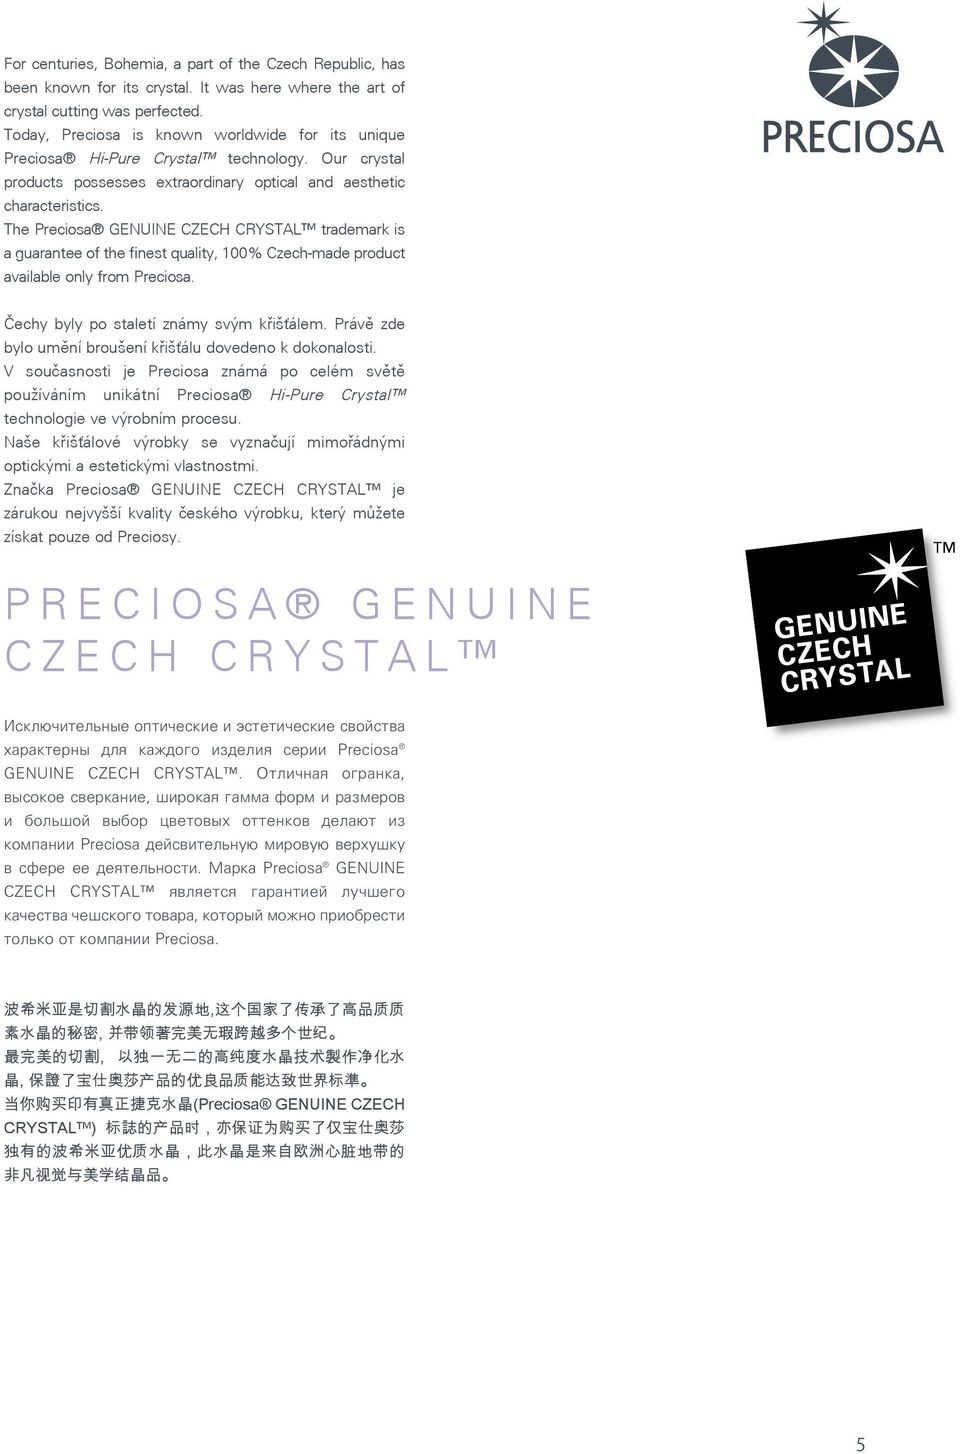 The Preciosa GENUINE CZECH CRYSTAL trademark is a guarantee of the finest quality, 100% Czech-made product available only from Preciosa. Čechy byly po staletí známy svým křišťálem.